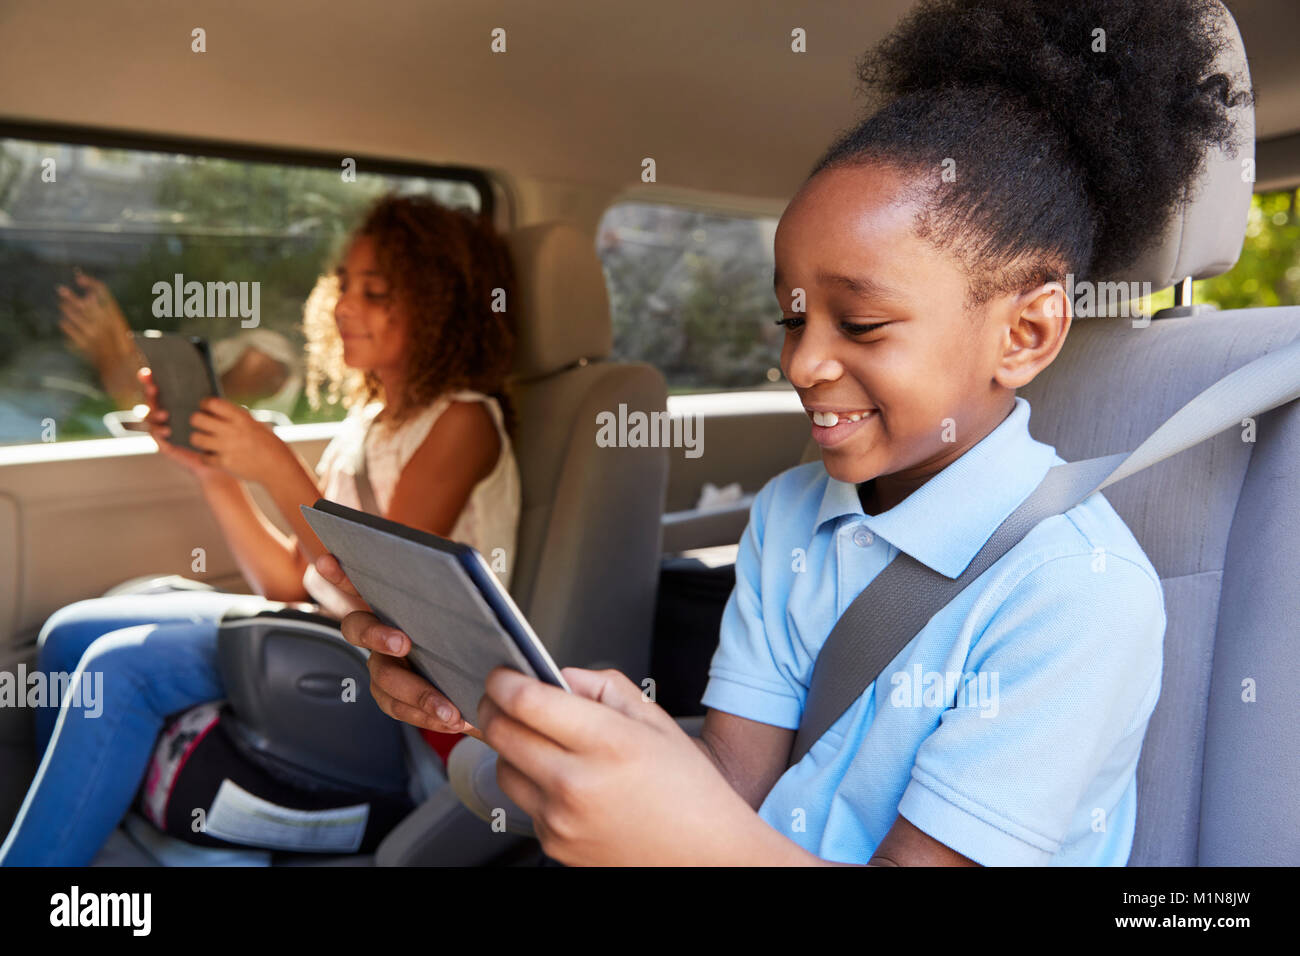 Los niños utilizando dispositivos digitales en un trayecto en coche Foto de stock